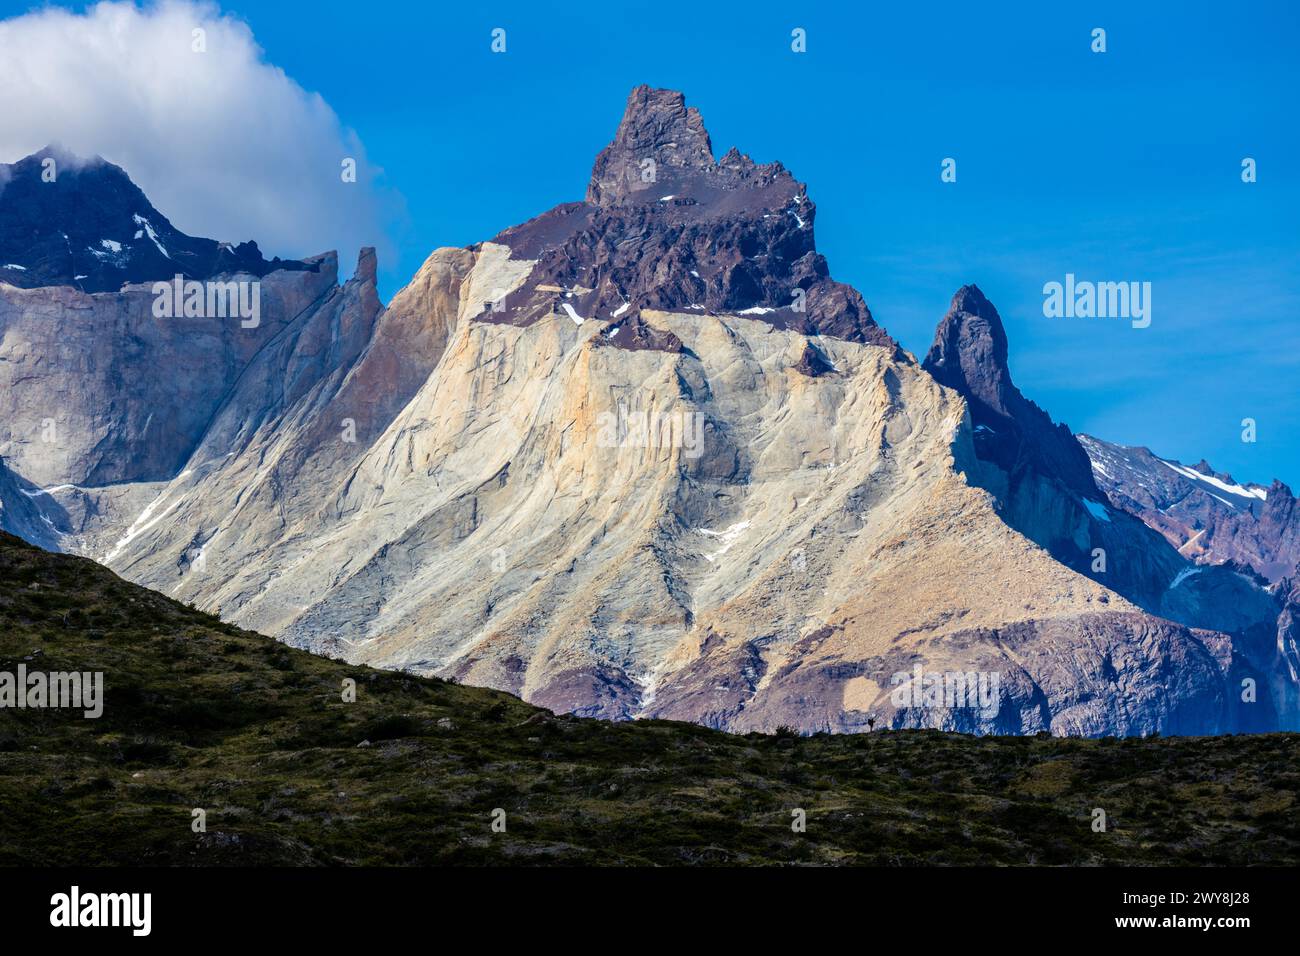 Montagnes Los Cuernos dans le belvédère Torres del Paine. Beau point de vue sur les sommets de montagne en Patagonie chilienne, Chili. Paysage pittoresque de Patagonie Banque D'Images